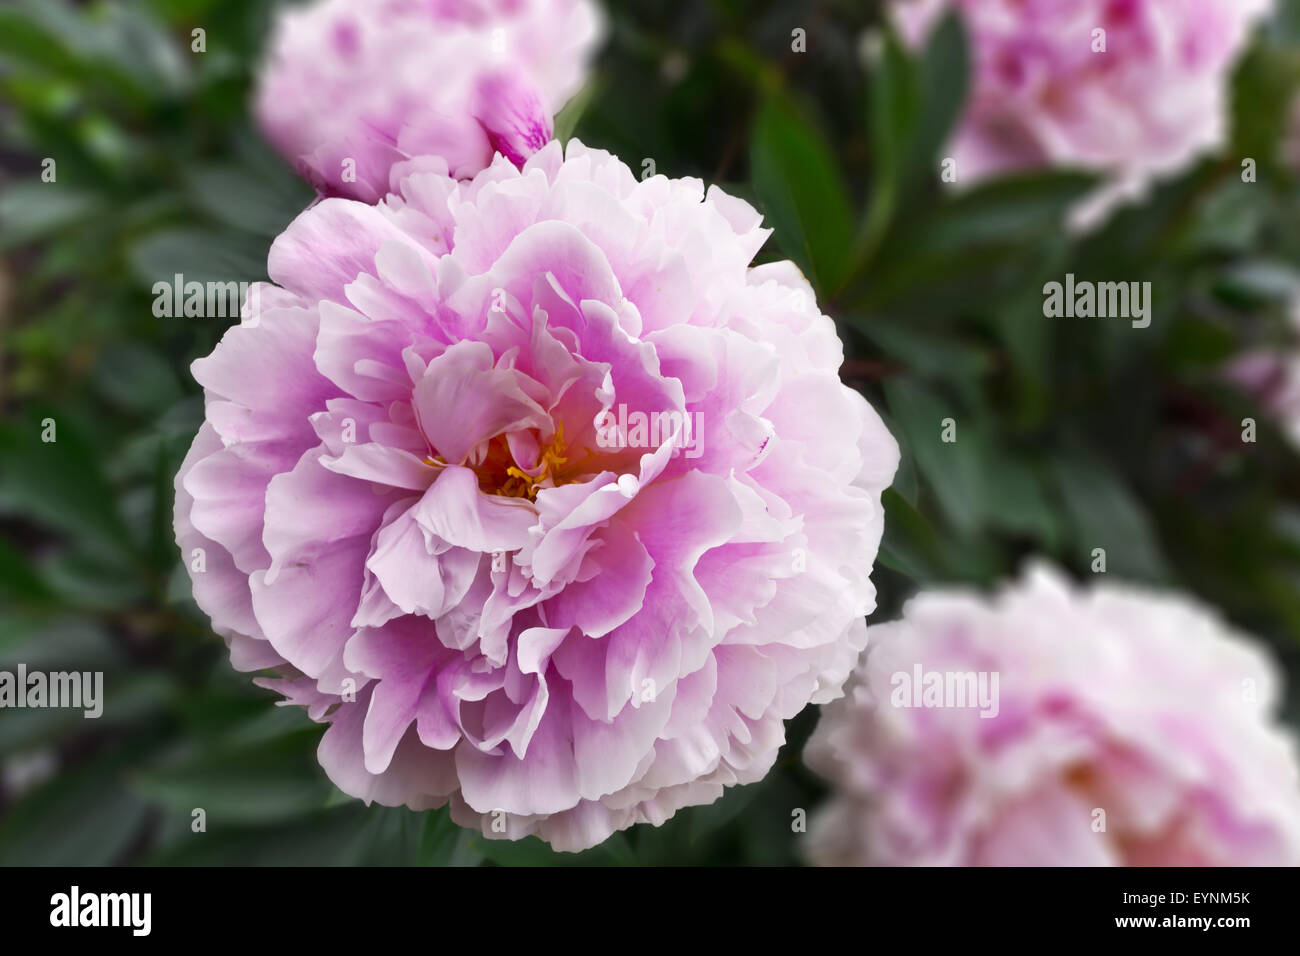 Gran rosa peonía planta con flores en un jardín con fondo borroso. Foto de stock